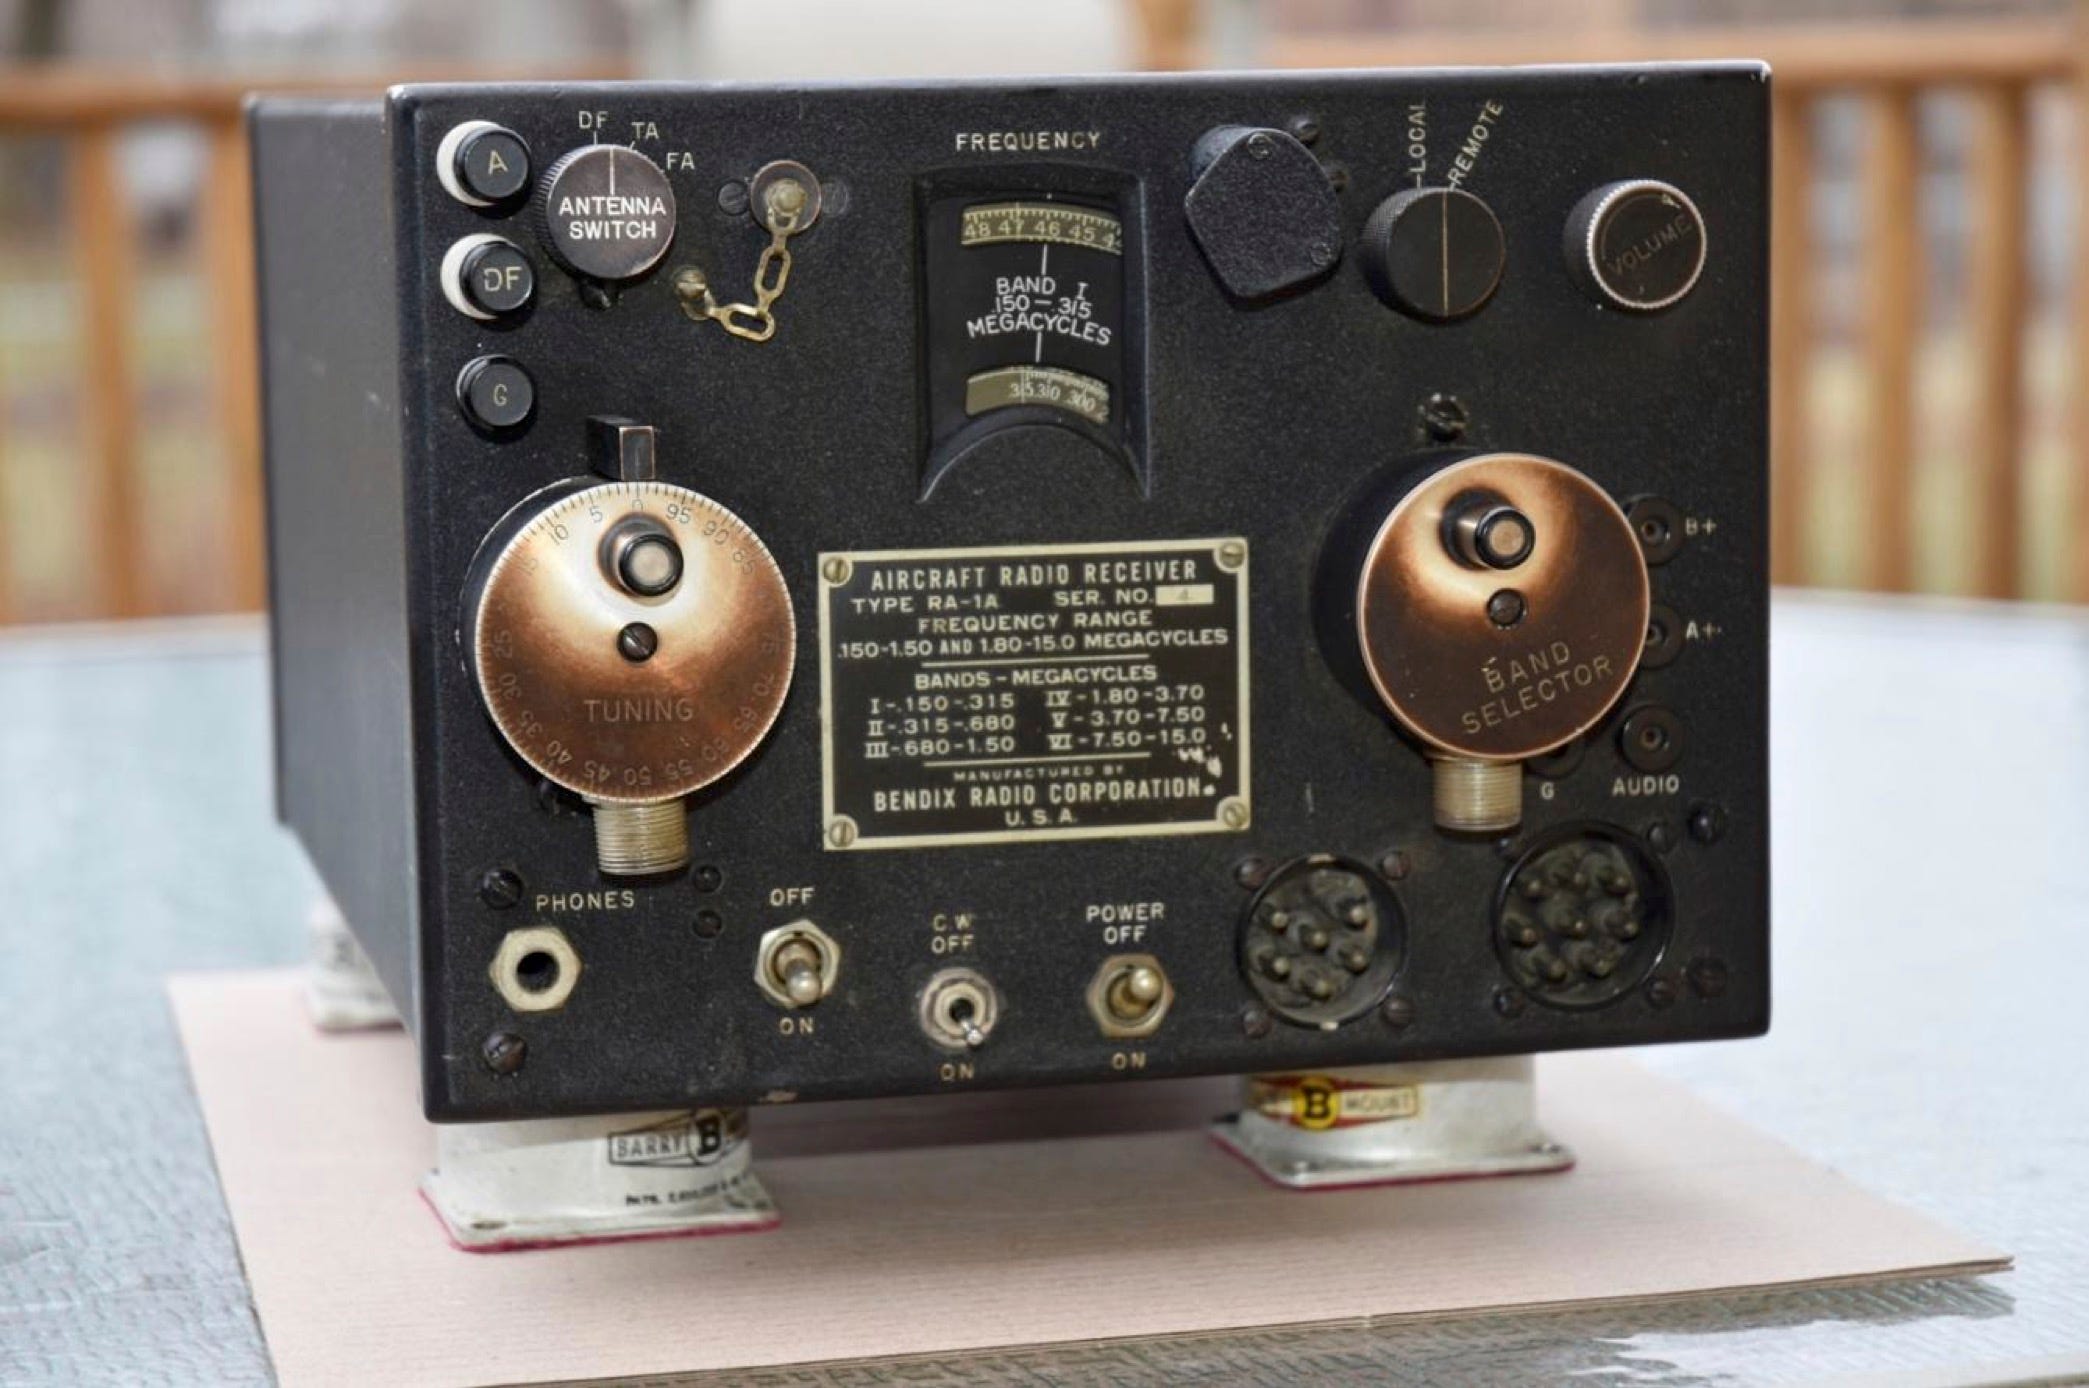 Der Funkempfänger des Flugzeugs wurde von Nauticos im Rahmen ihrer Recherchen zu Earharts letzten Übertragungen nachgebaut.